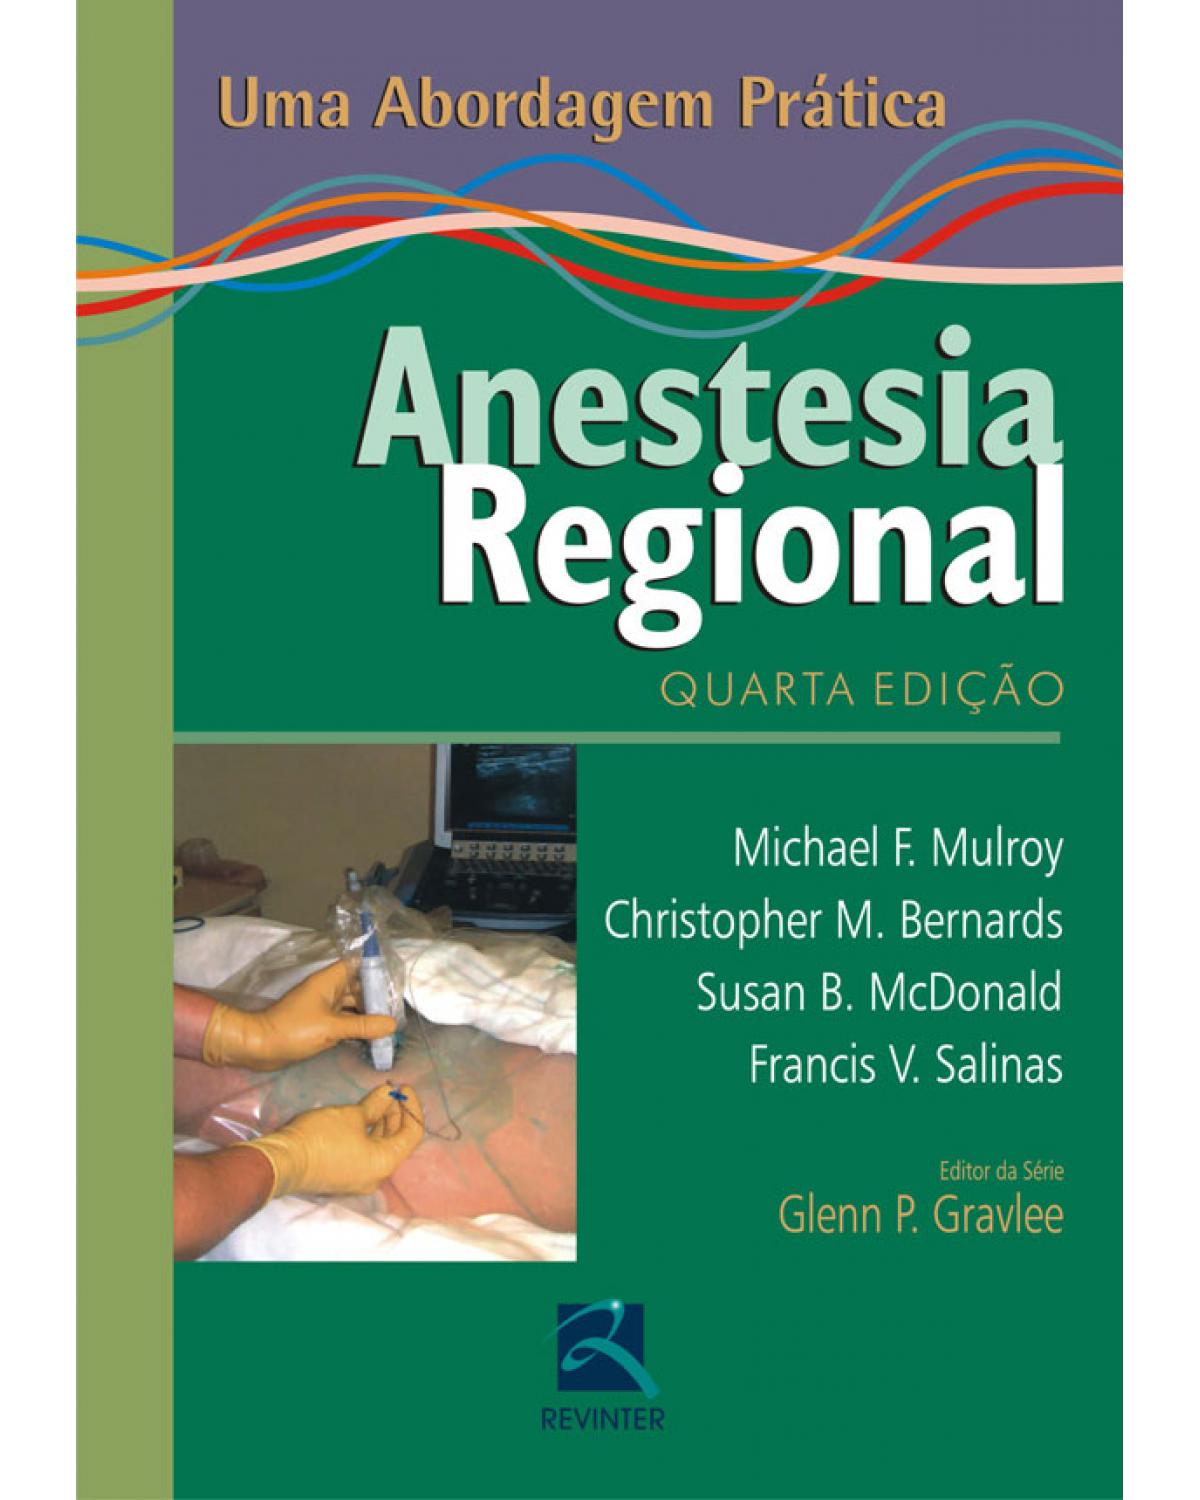 Anestesia regional: uma abordagem prática - 4ª Edição | 2010